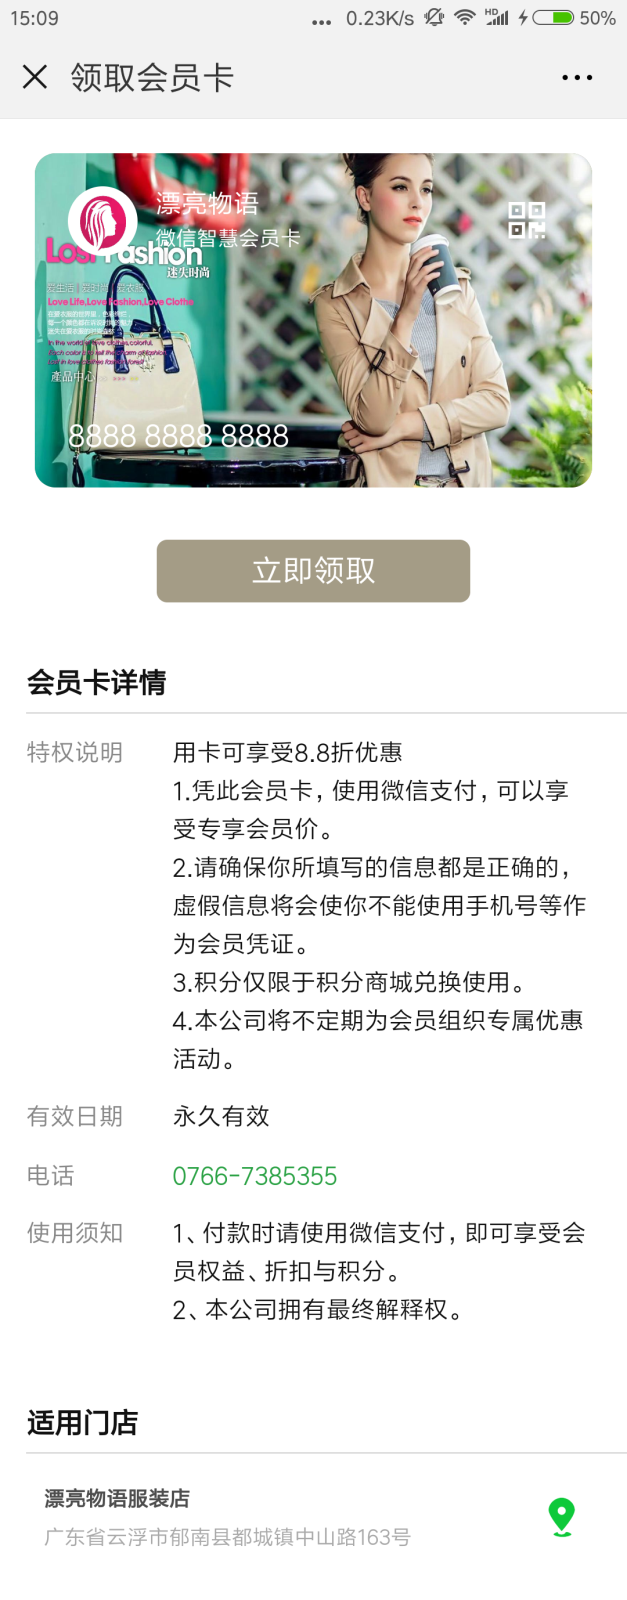 Screenshot_2018-08-23-15-09-28-855_com.tencent.mm.png